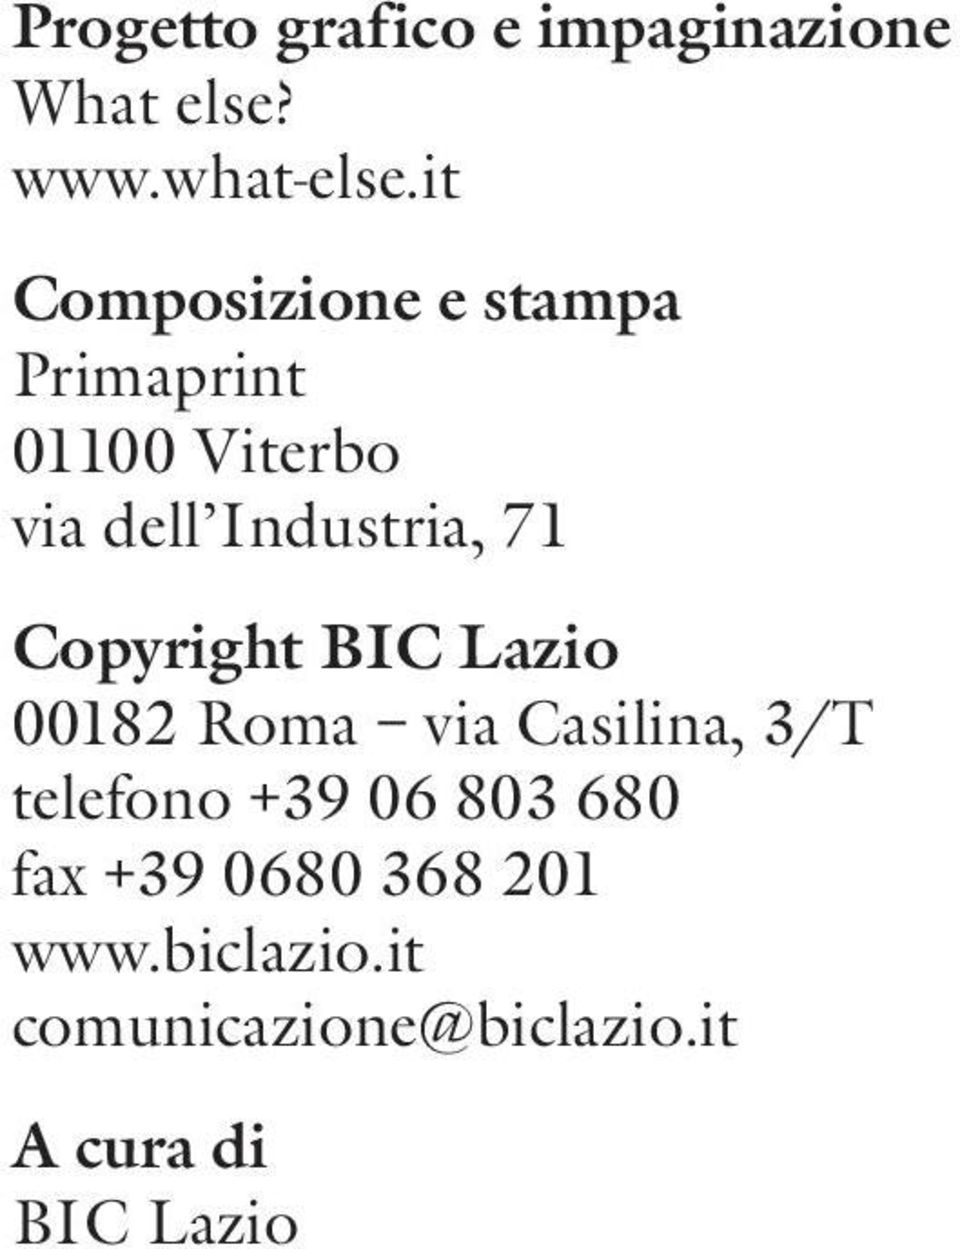 71 Copyright BIC Lazio 00182 Roma via Casilina, 3/T telefono +39 06 803